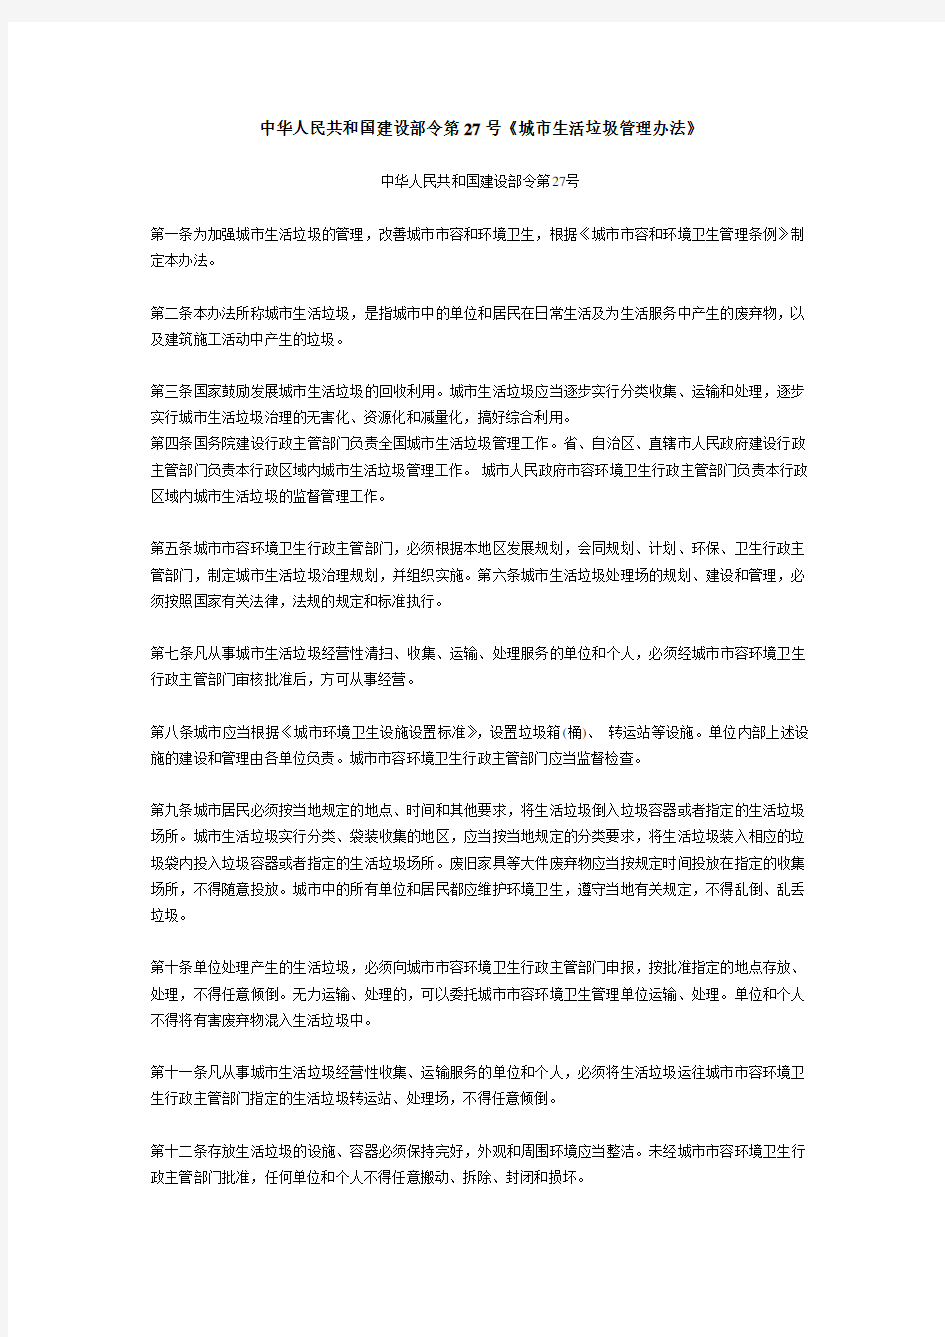 中华人民共和国建设部令第27号《城市生活垃圾管理办法》